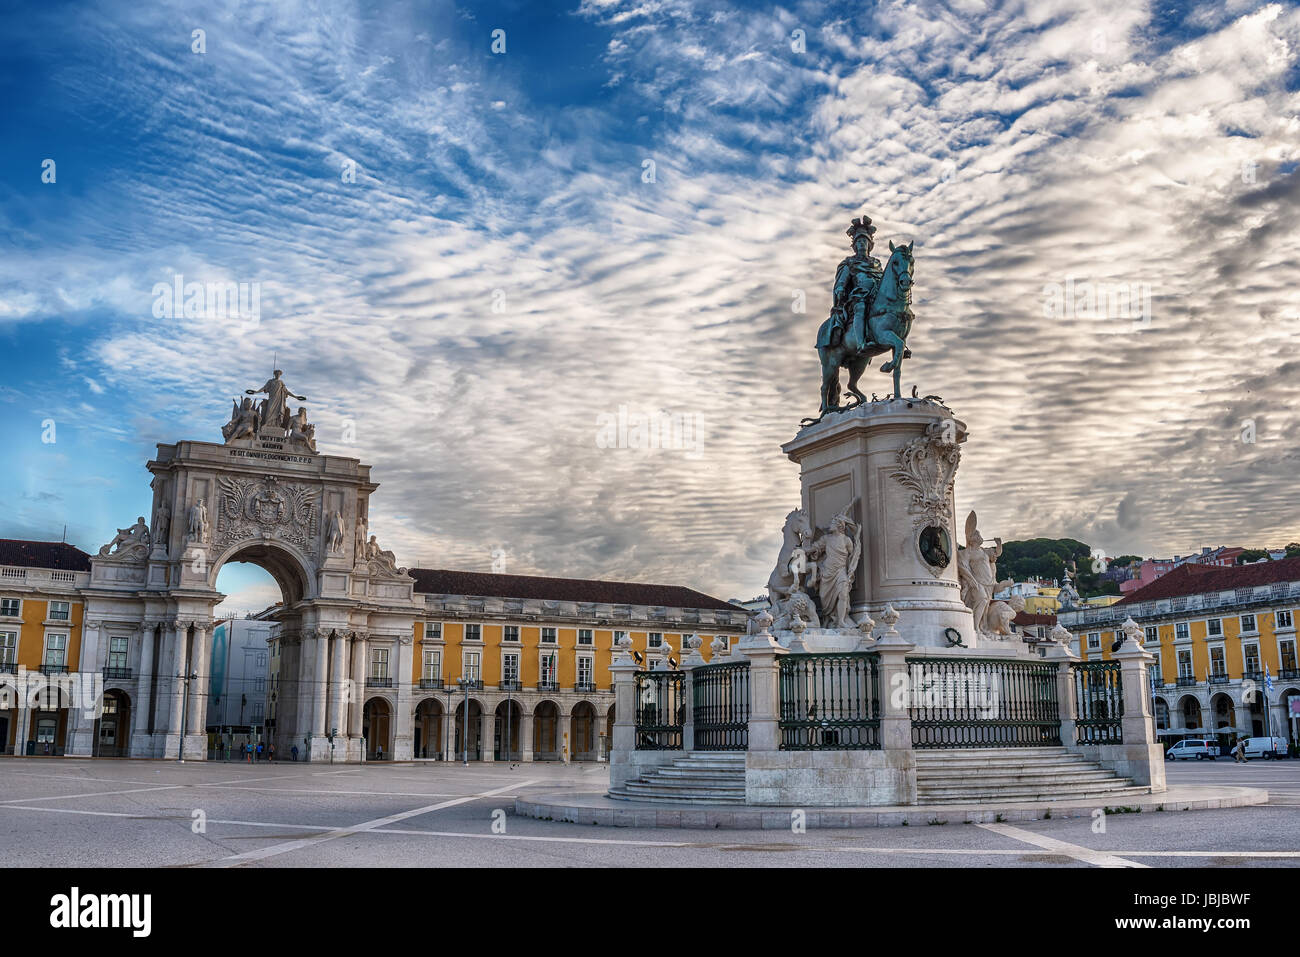 Lisbona, Portogallo: il trionfale Rua Augusta Arch, Arco Triunfal de Rua Augusta, Praca do Comercio e la statua del re José I Foto Stock